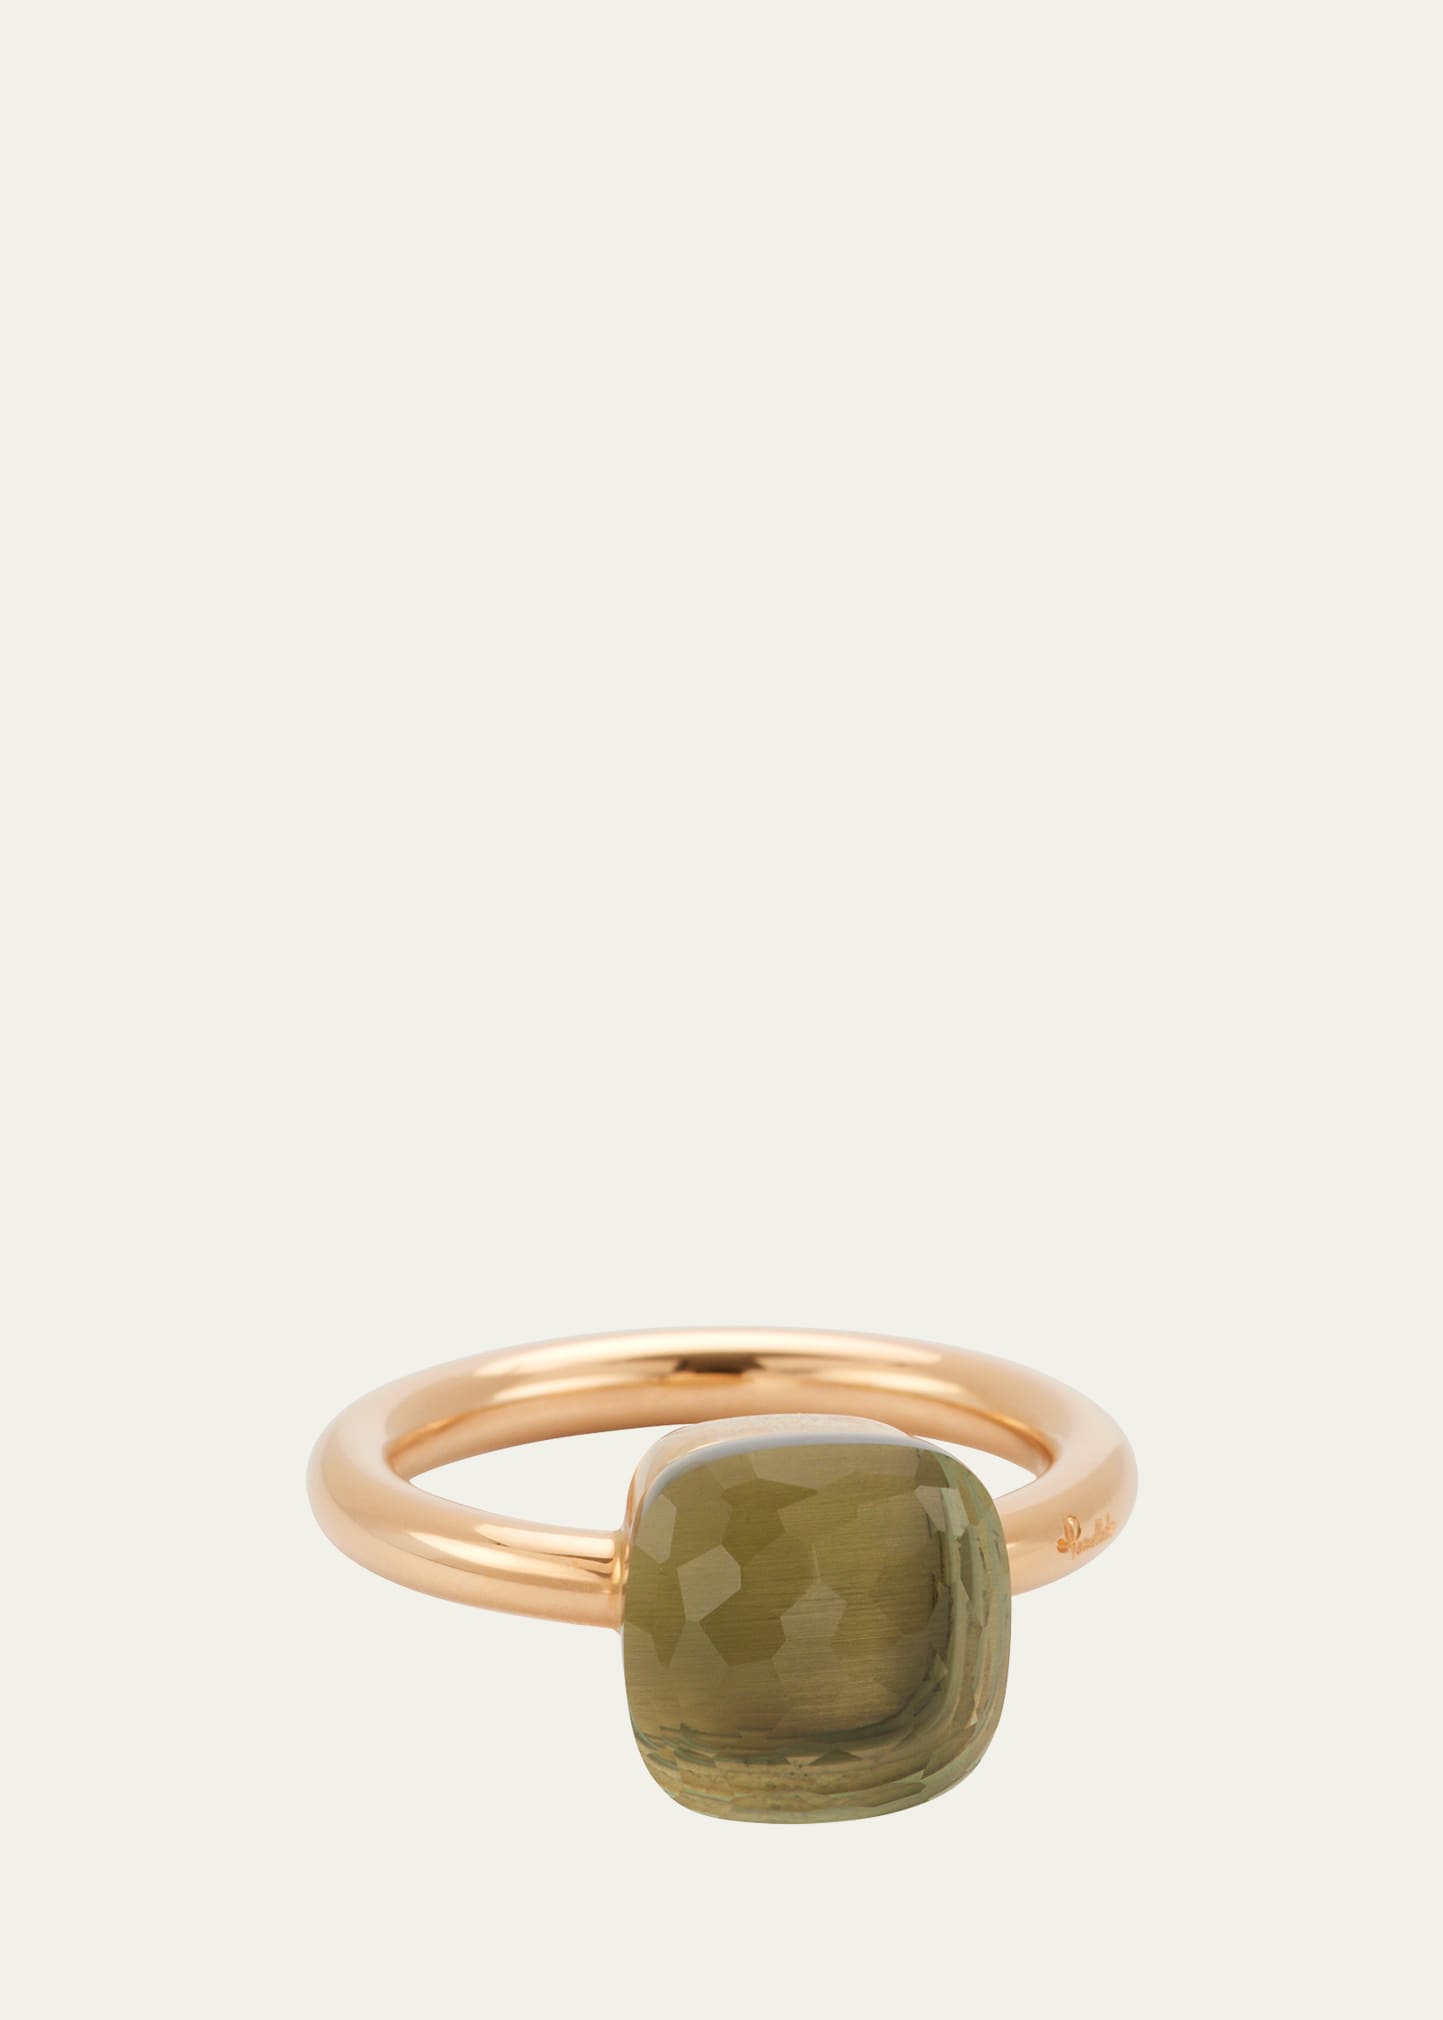 Nudo 18K Gold Ring with Prasiolite